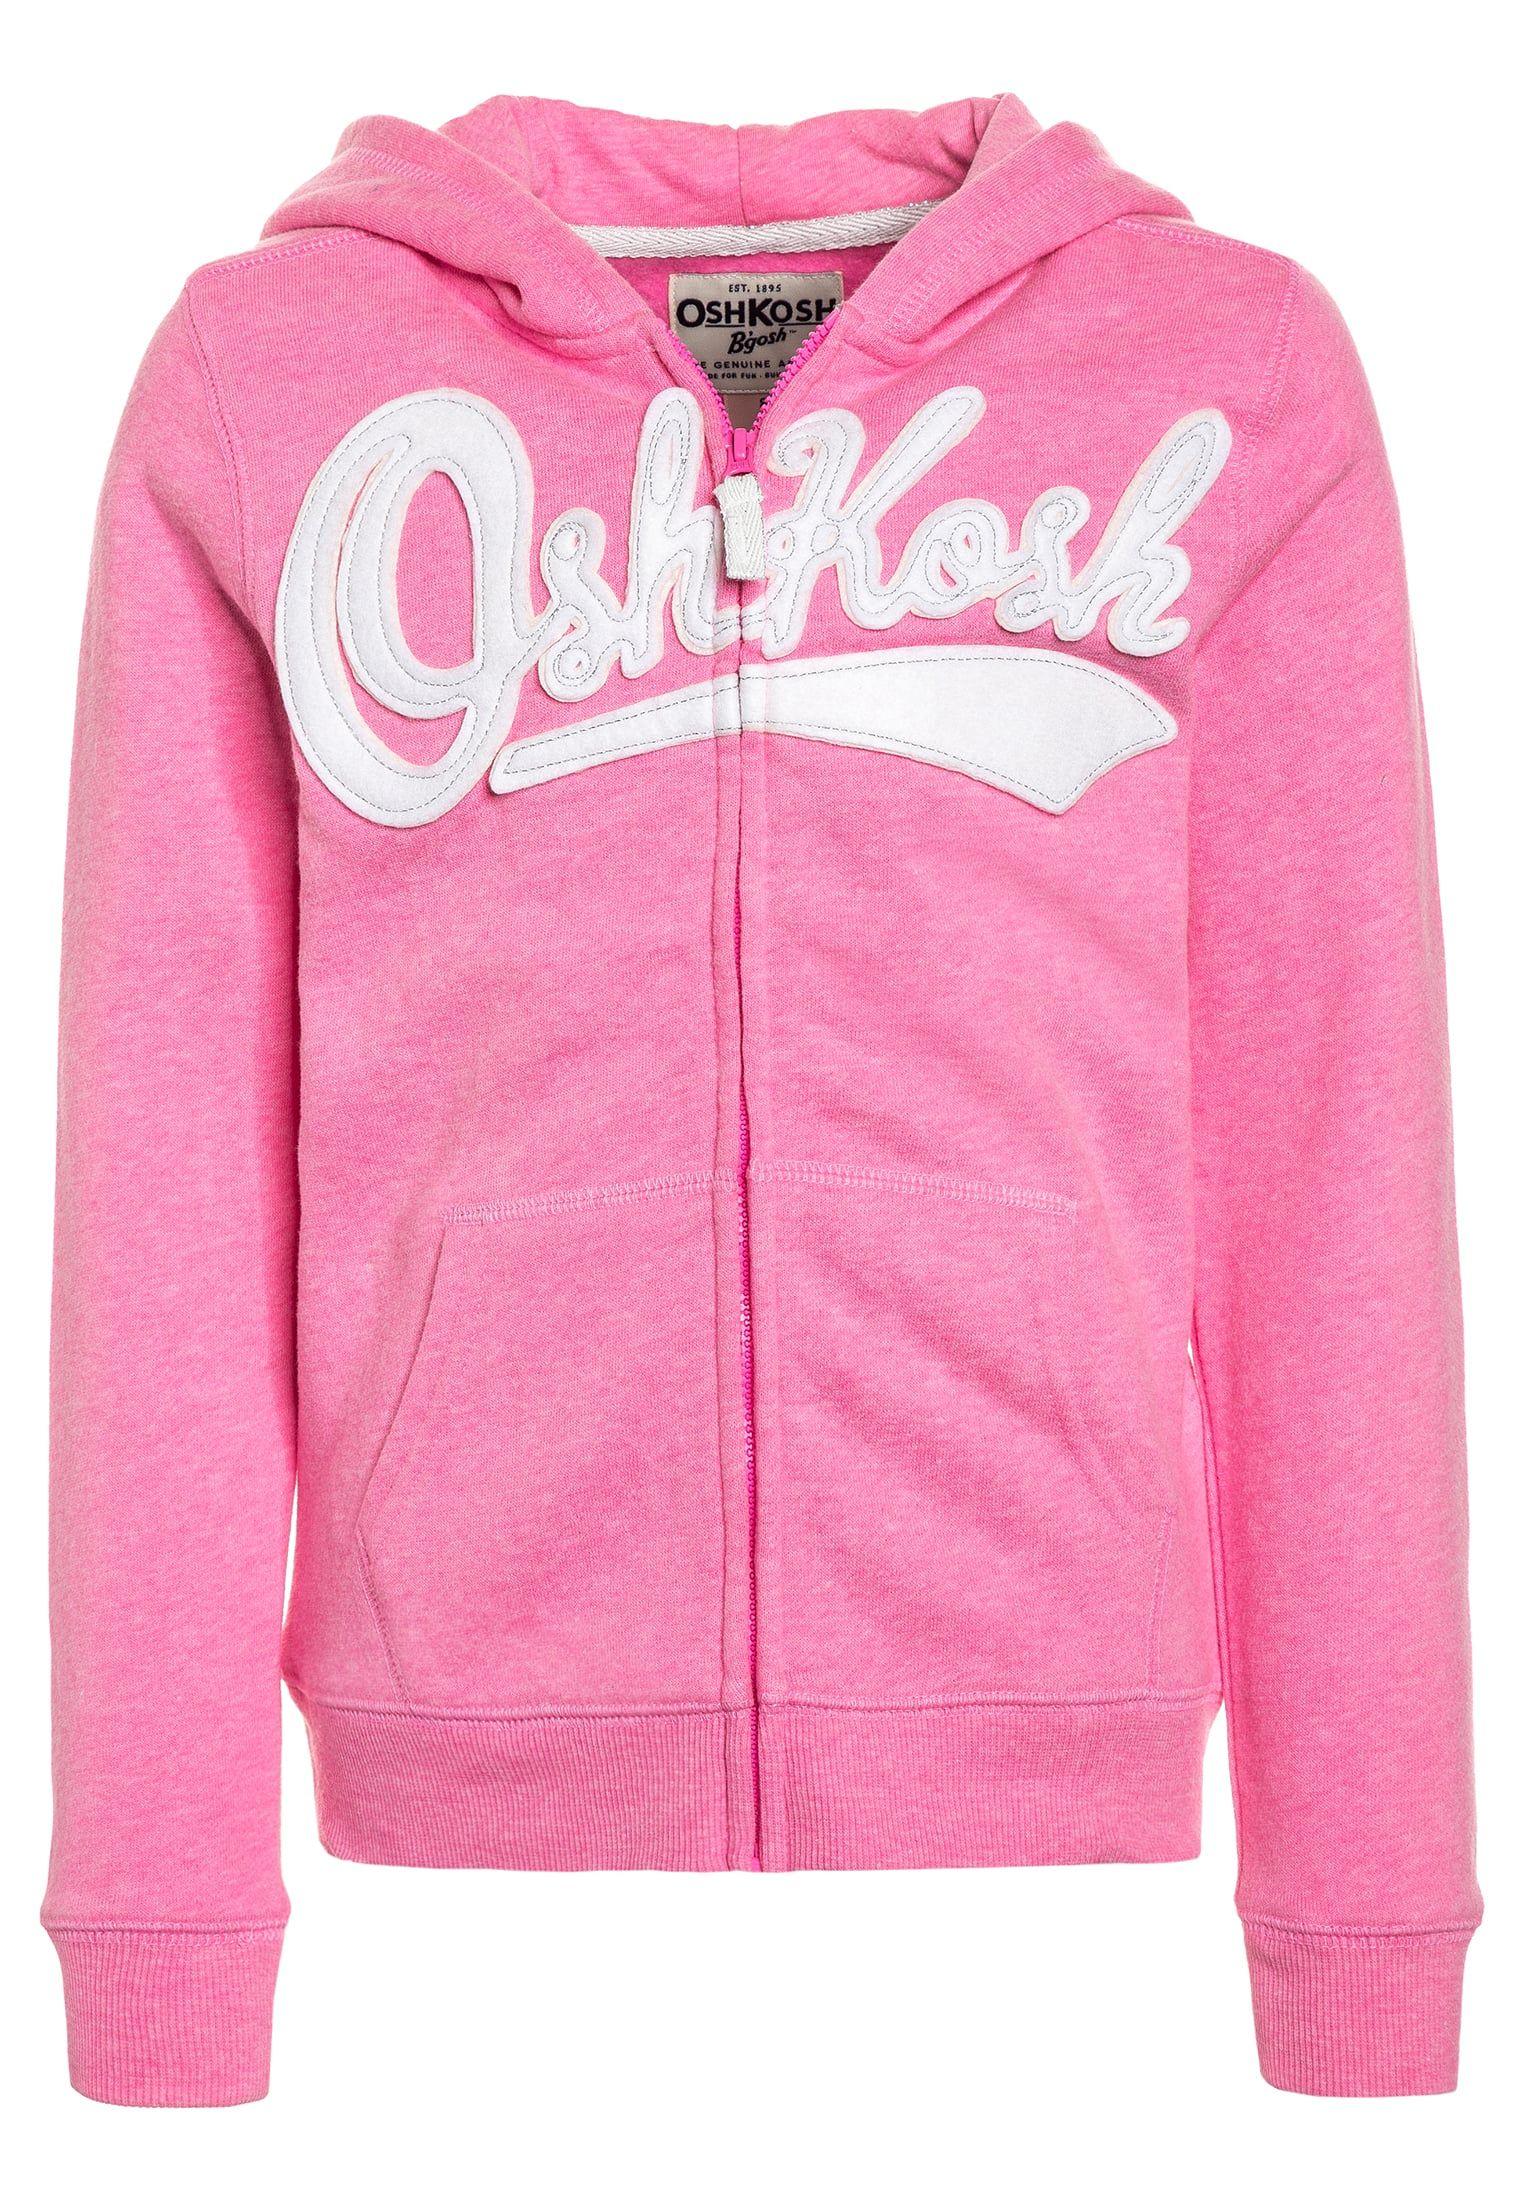 Top Pink Logo - OshKosh LOGO HOODIE - Tracksuit top pink